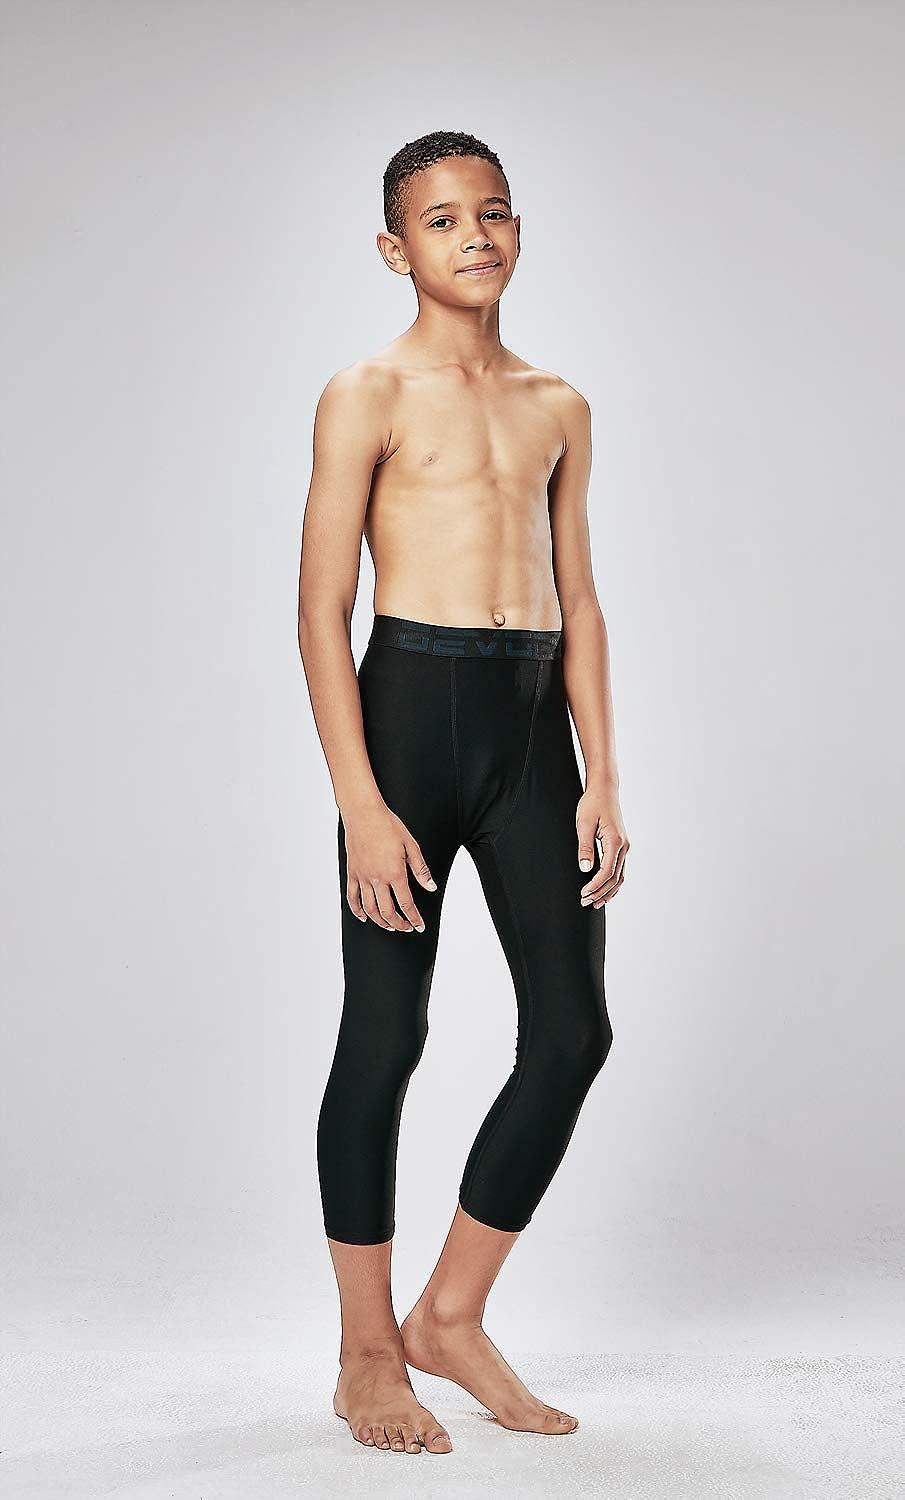 DEVOPS Boys 2-Pack 3/4 Compression Tights Sport Leggings Pants X-Large  Black / Black